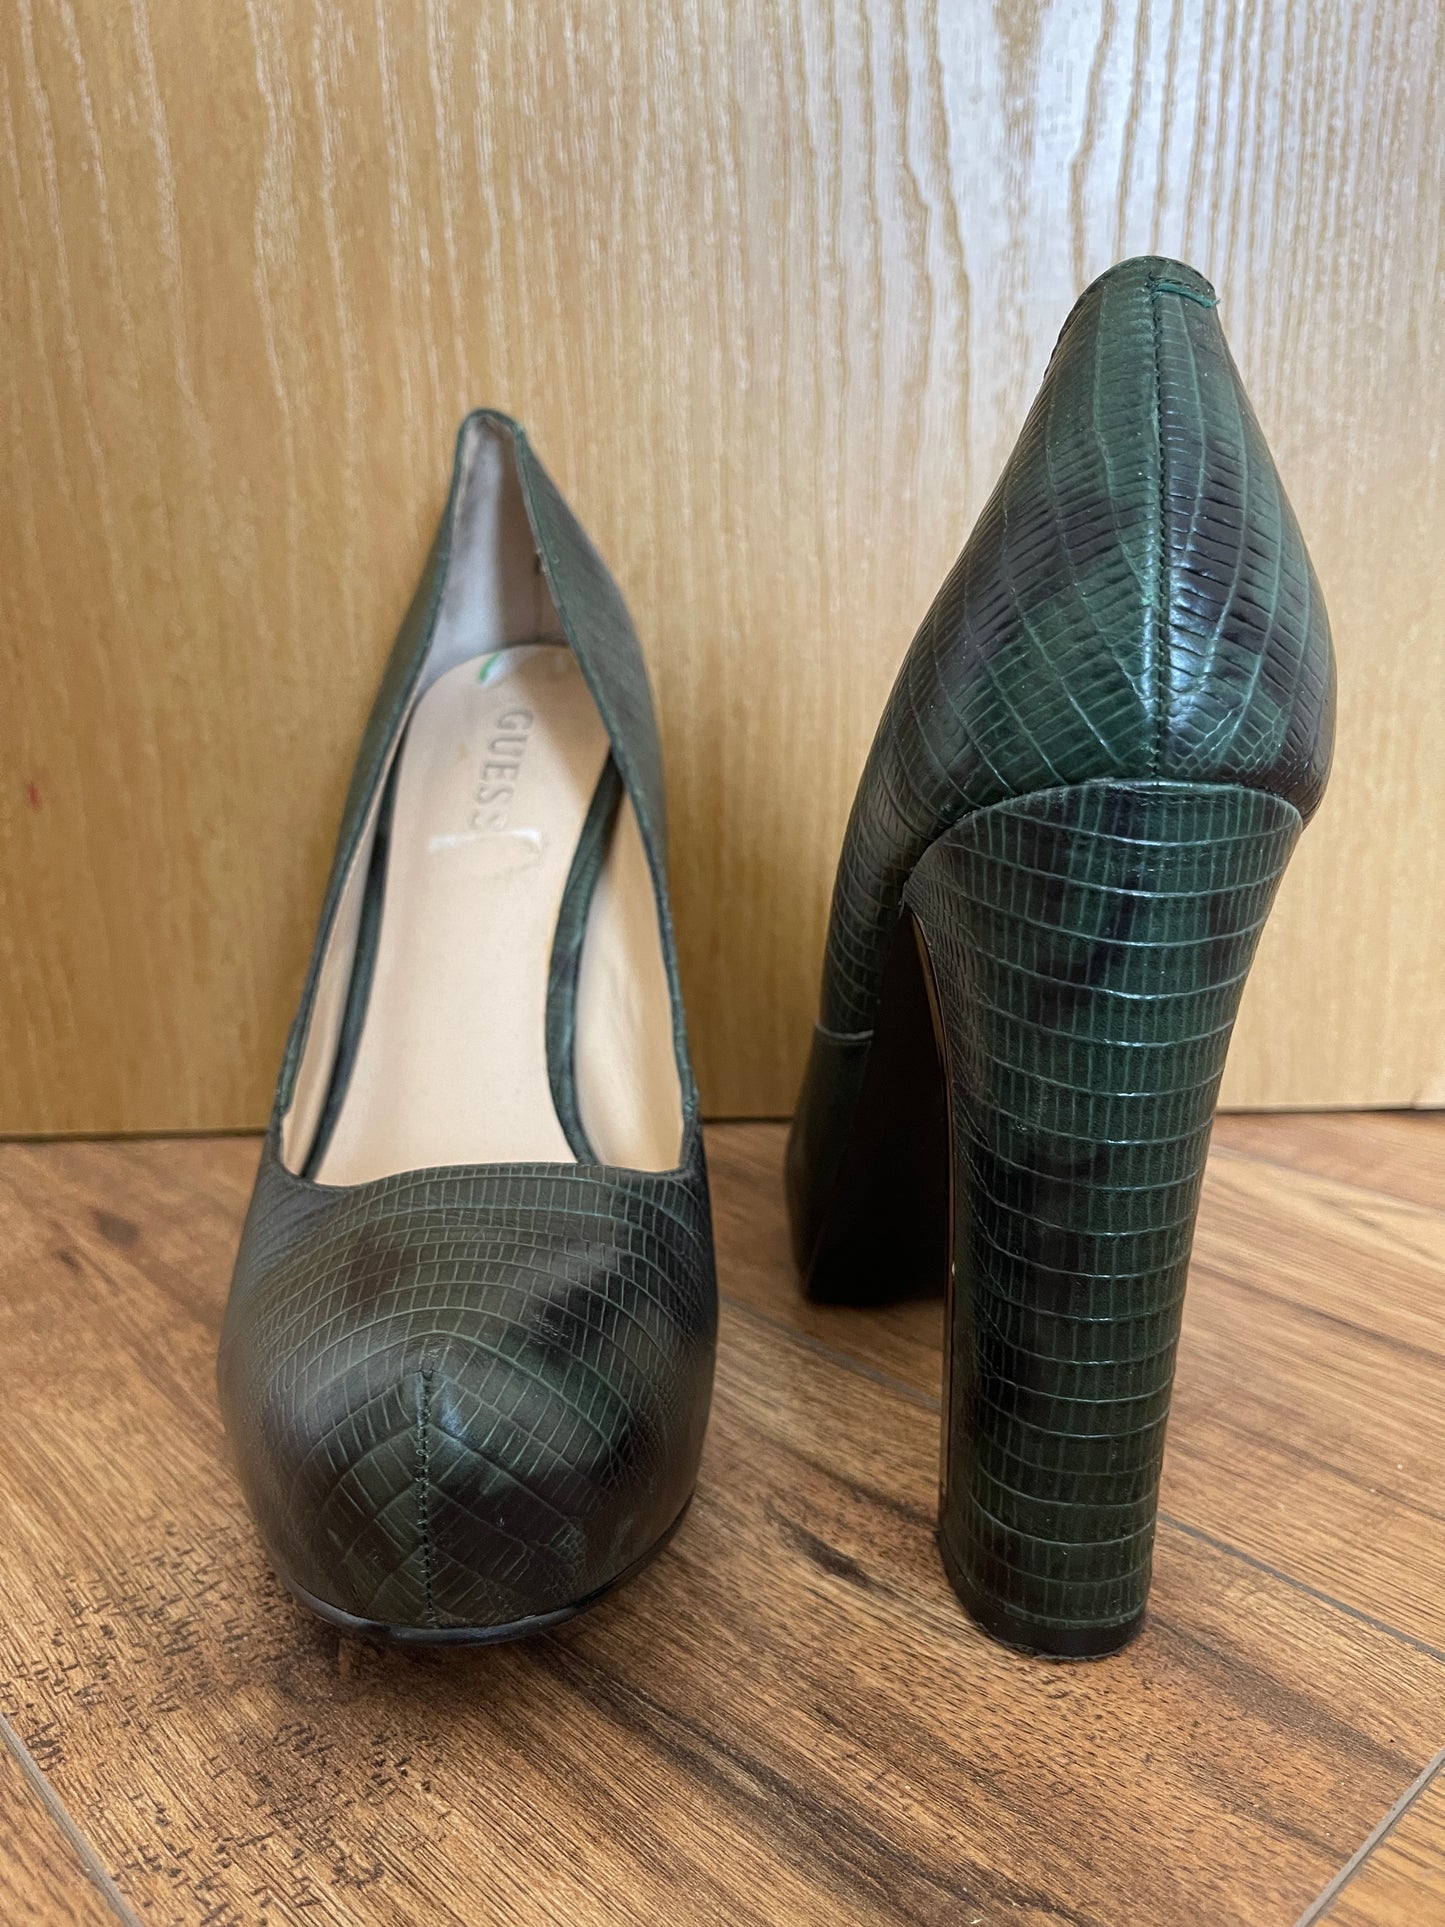 Pantofi verzi cu toc gros imitatie piele de crocodil marimea 40